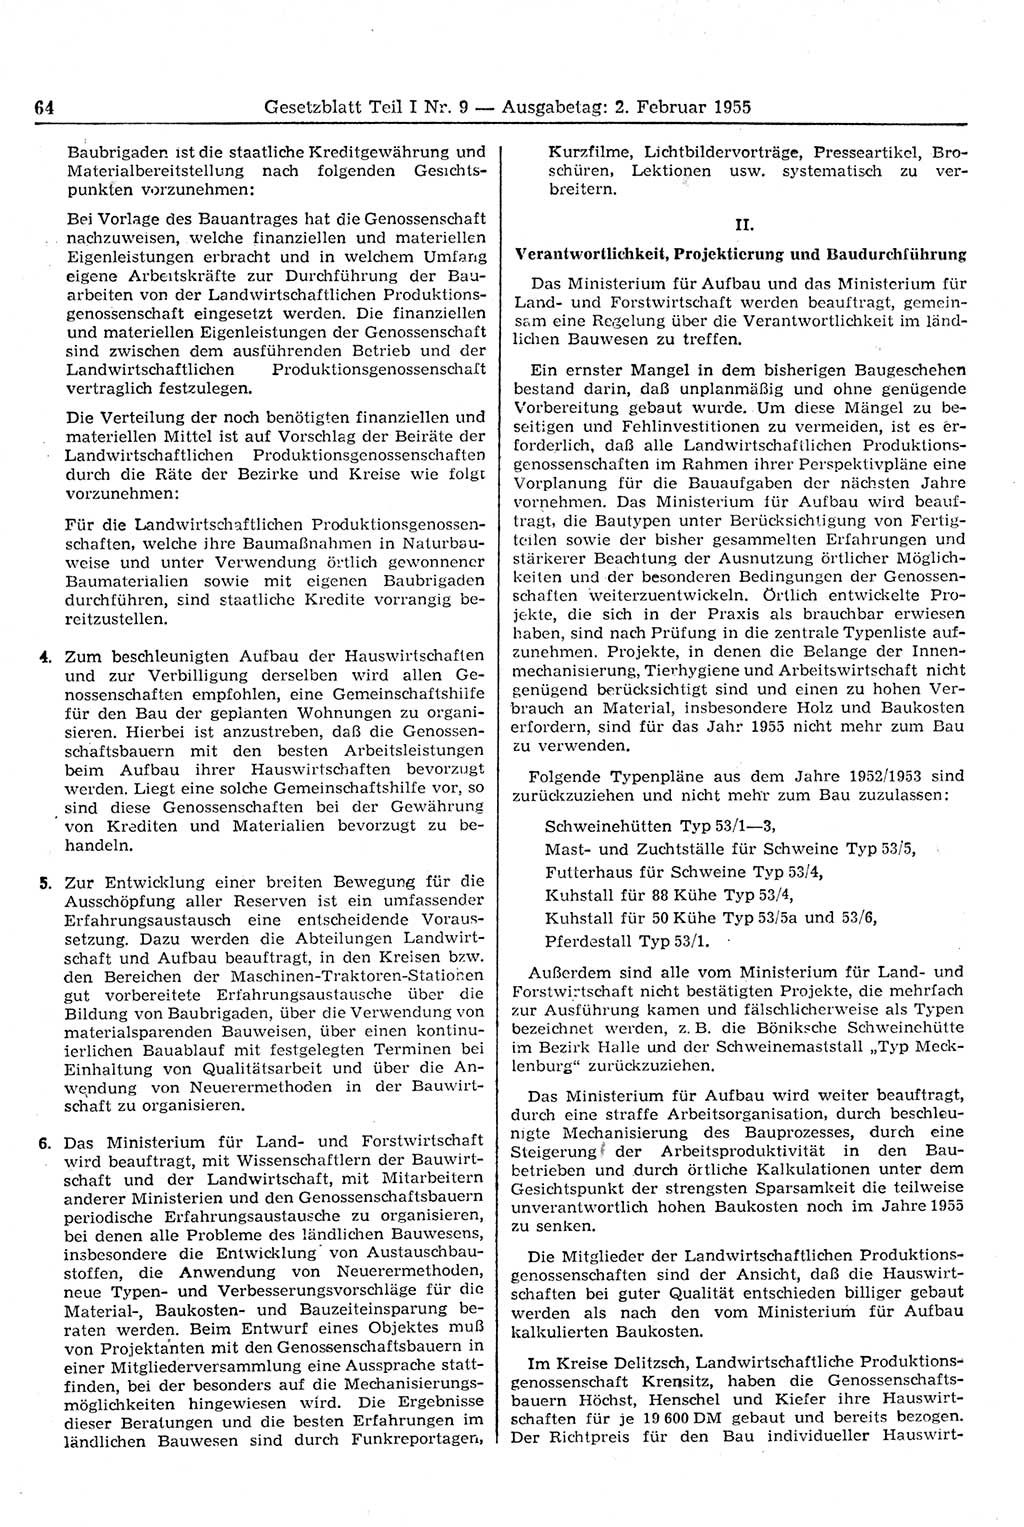 Gesetzblatt (GBl.) der Deutschen Demokratischen Republik (DDR) Teil Ⅰ 1955, Seite 64 (GBl. DDR Ⅰ 1955, S. 64)